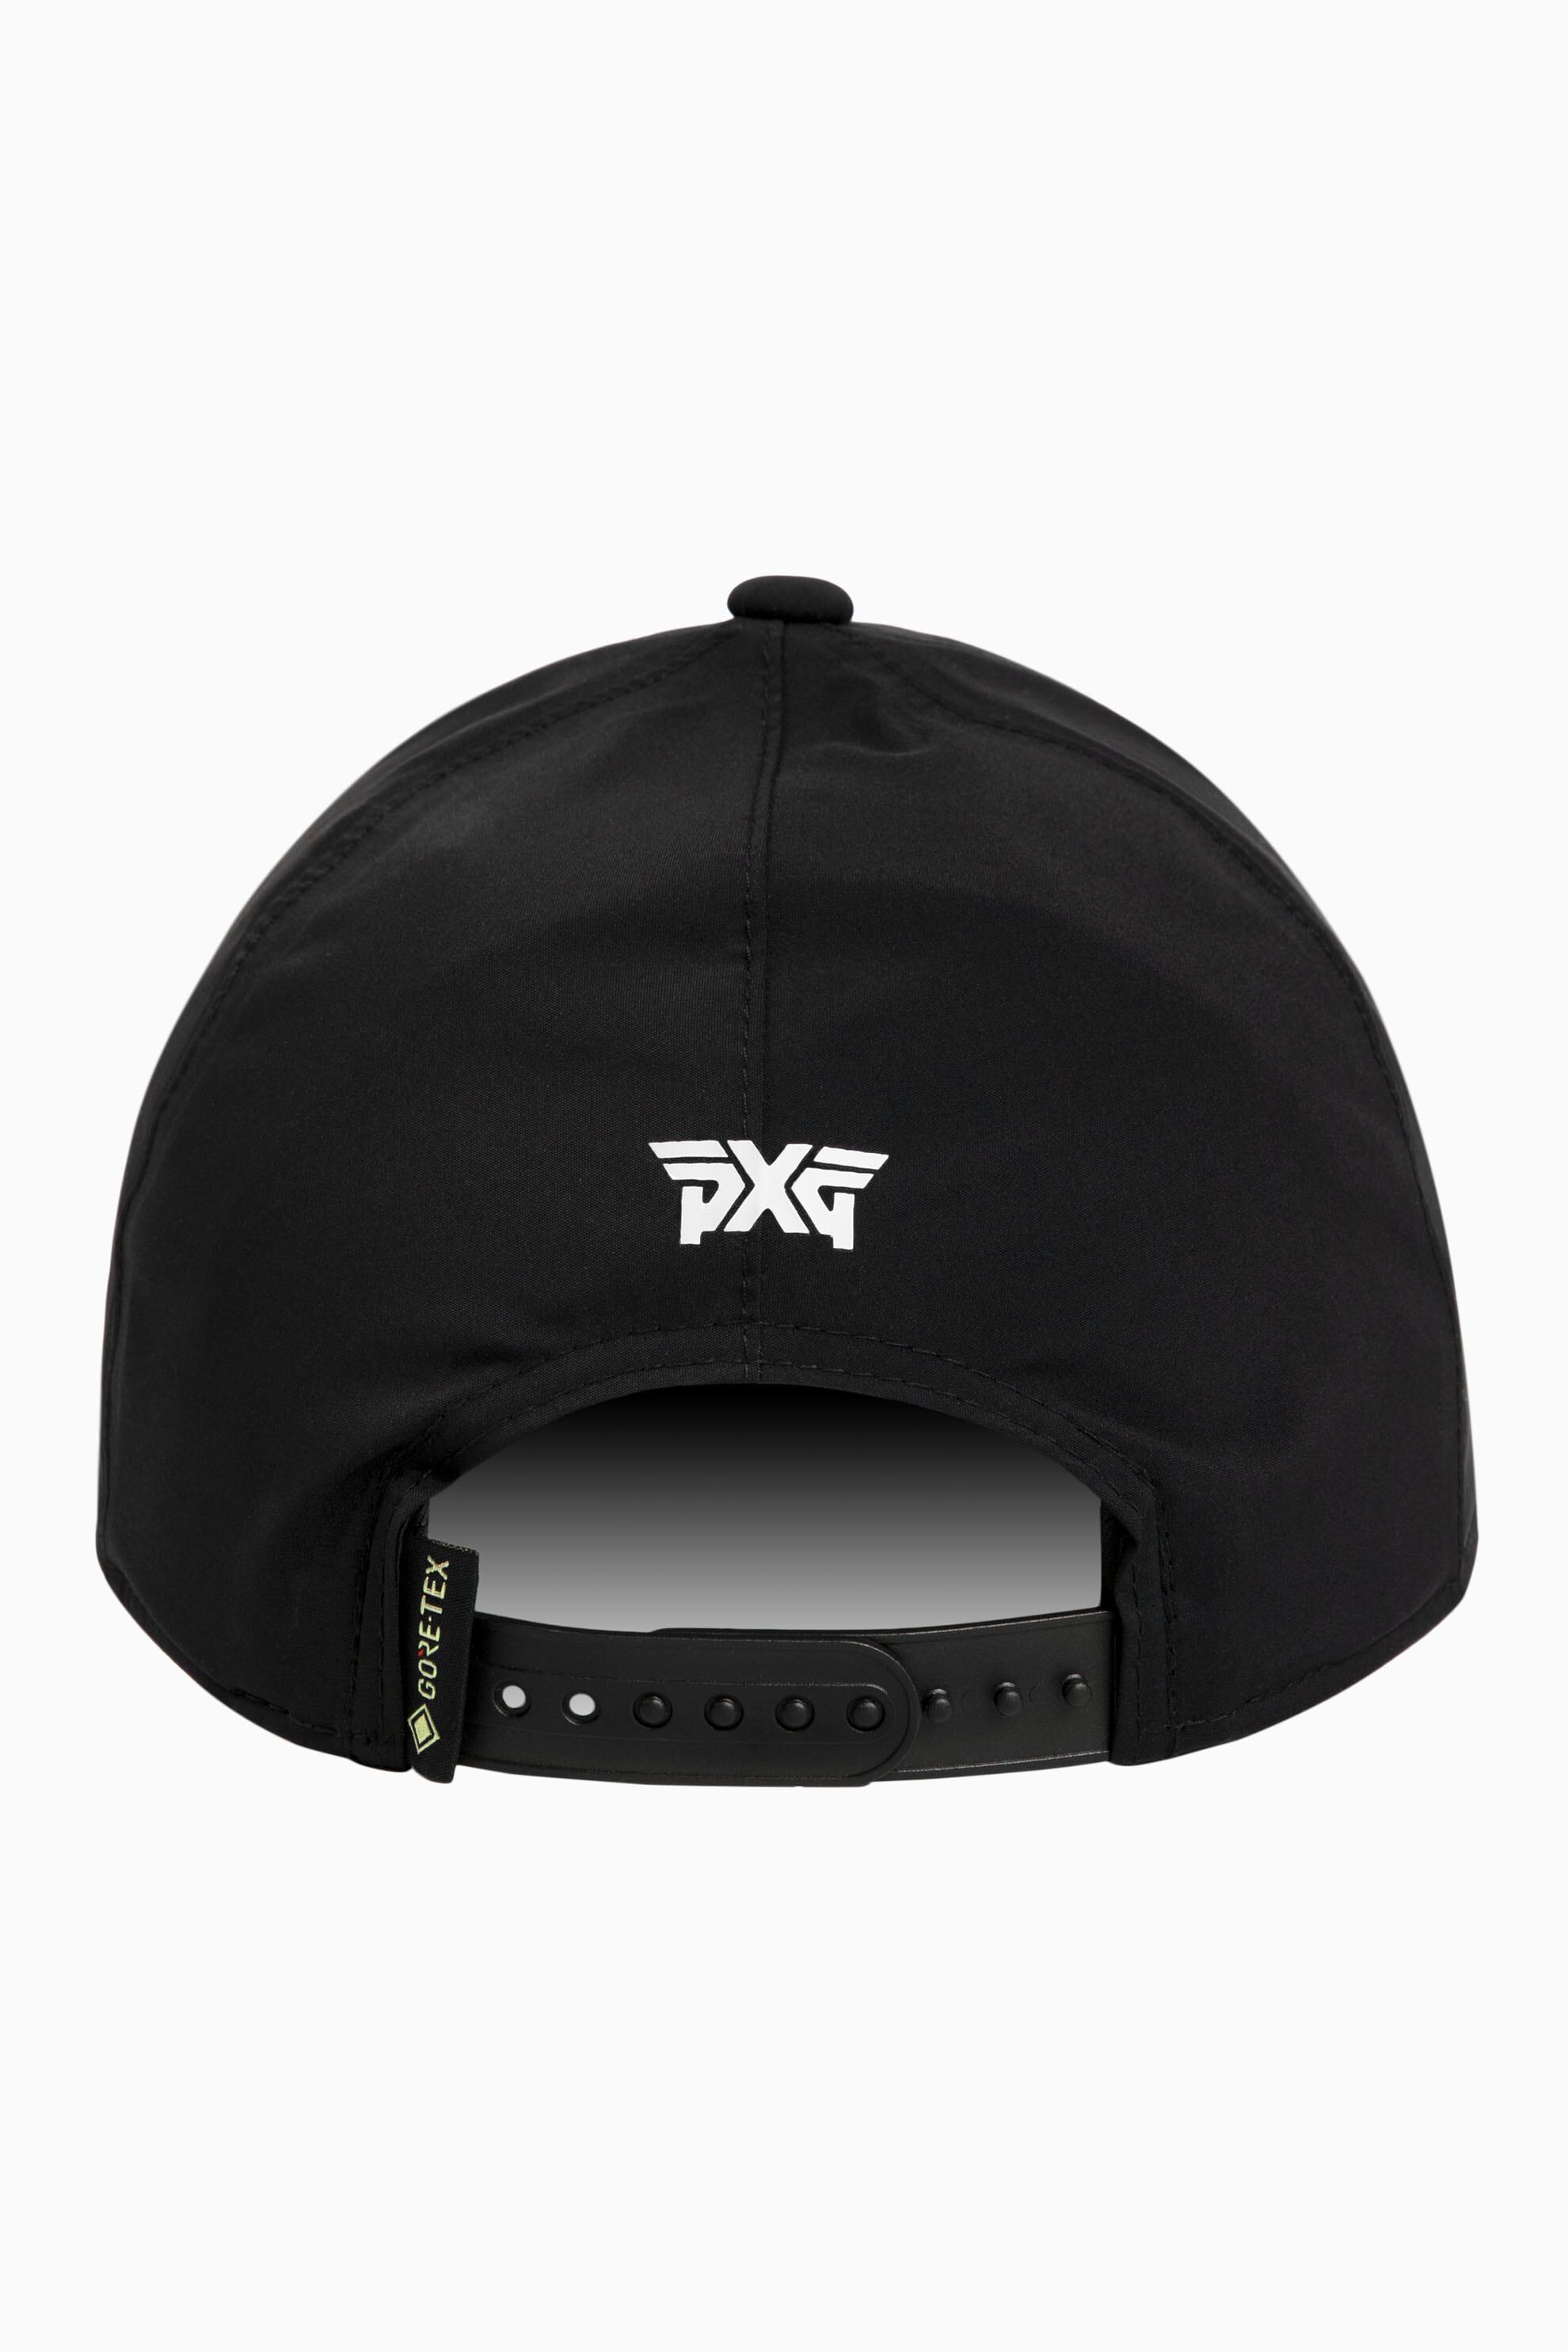 GORE-TEX 9FORTY Strapback Cap | Golf Hats | Shop Caps, Visors 